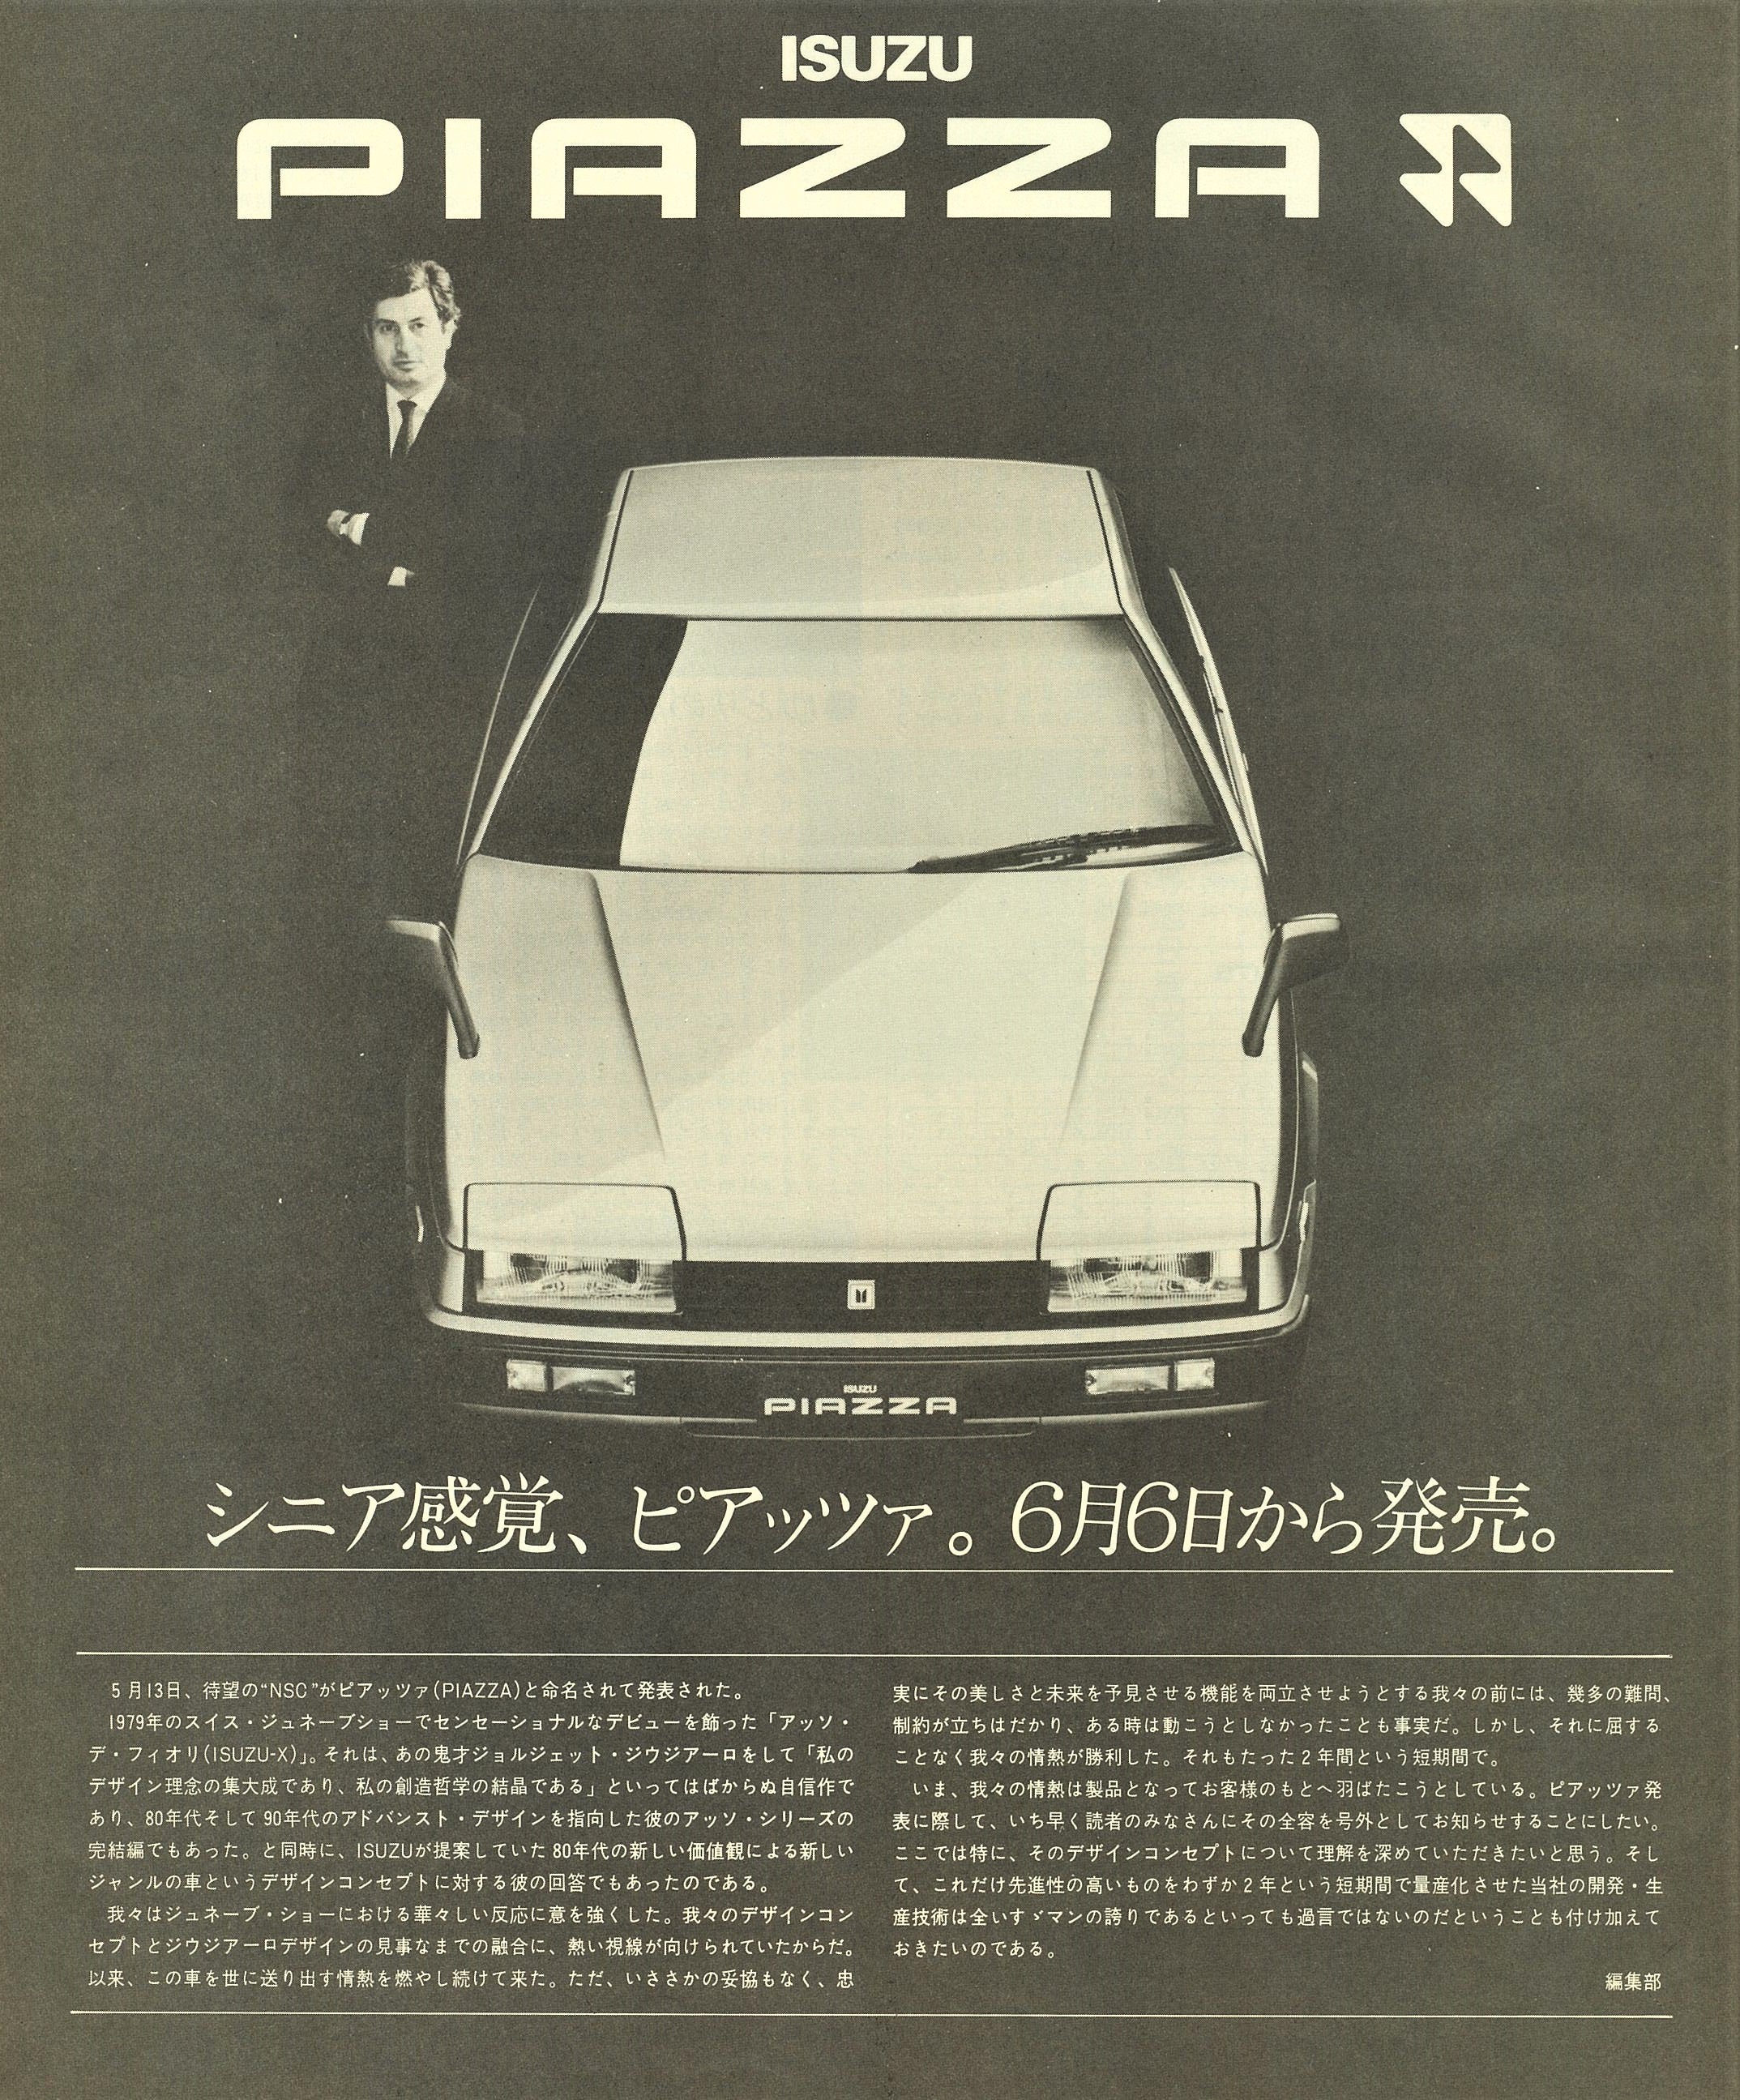 広告には名匠ジウジアーロも登場。117クーペ、フローリアン、ピアッツァ、後年のビークロスと、いすゞはプロトタイプカーをほぼそのままの姿で市販する例も多かった。